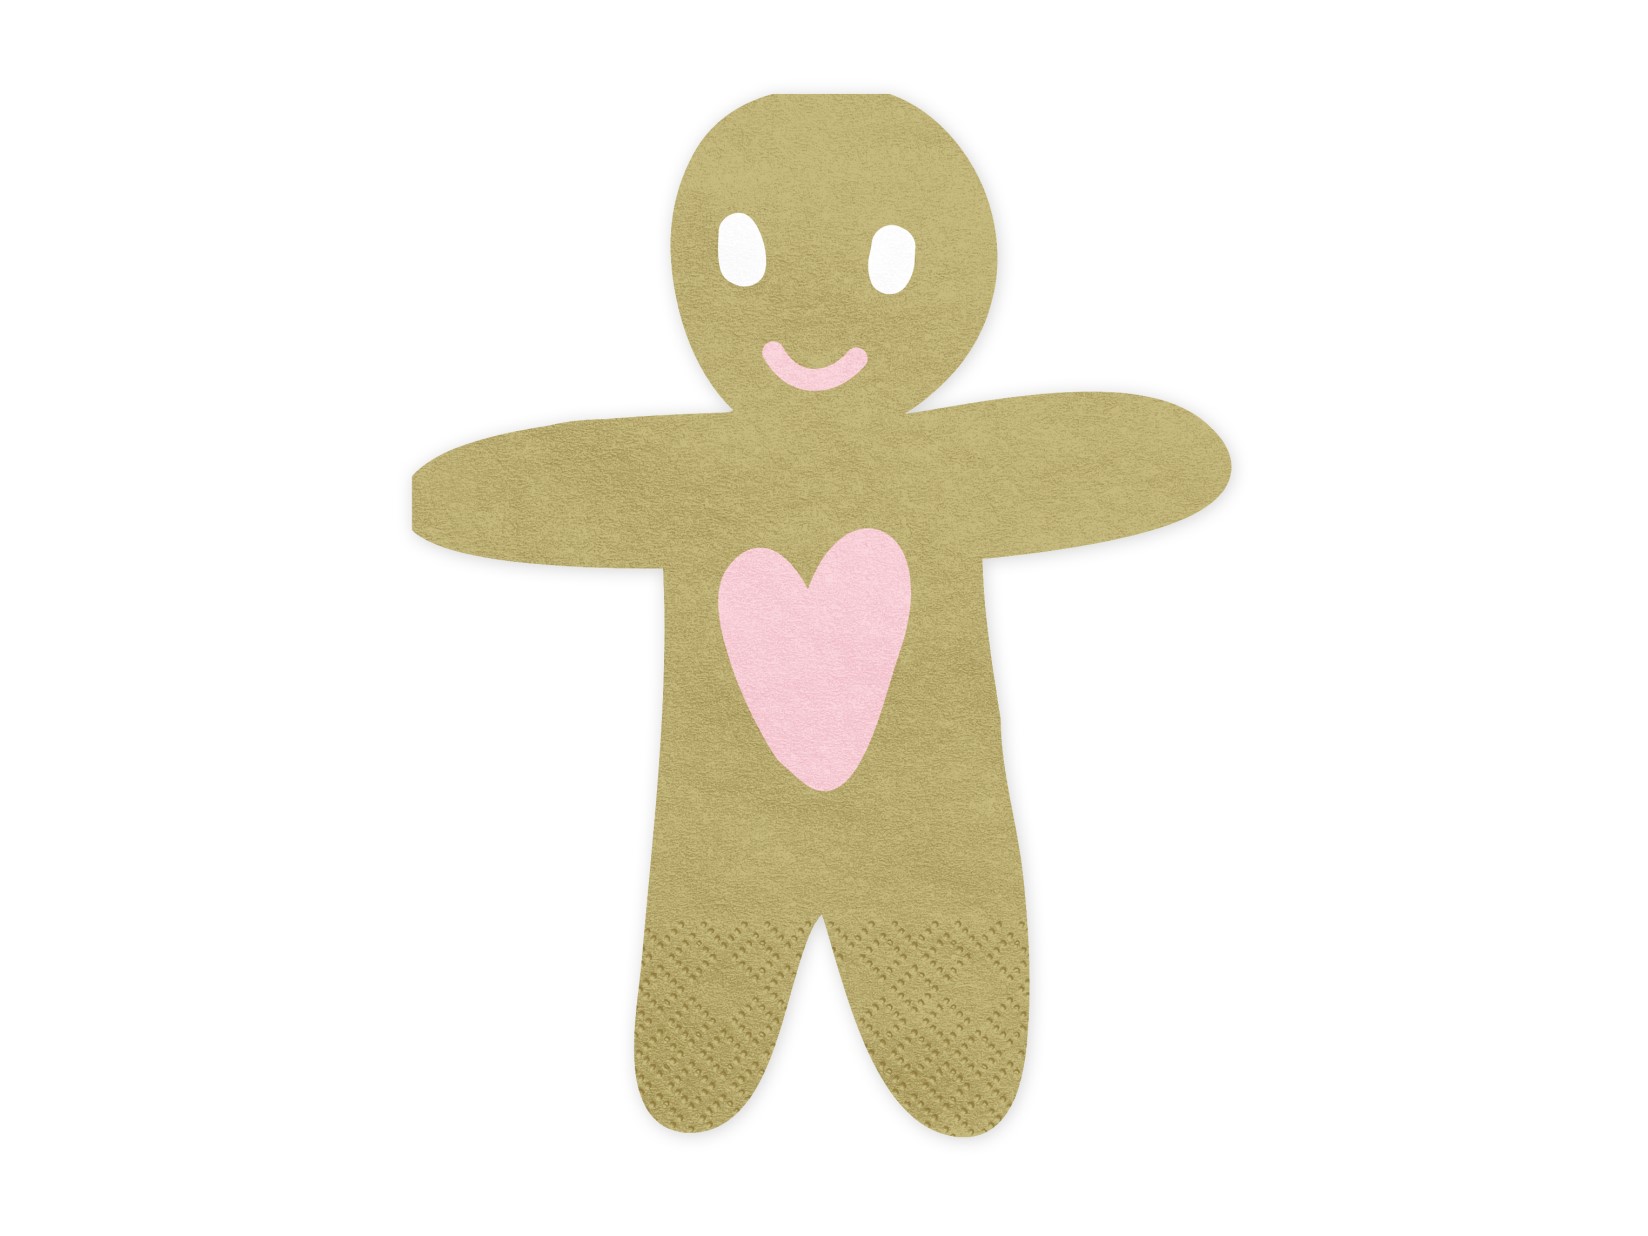 Χαρτοπετσέτες Gingerbread Man – 20 Τεμάχια